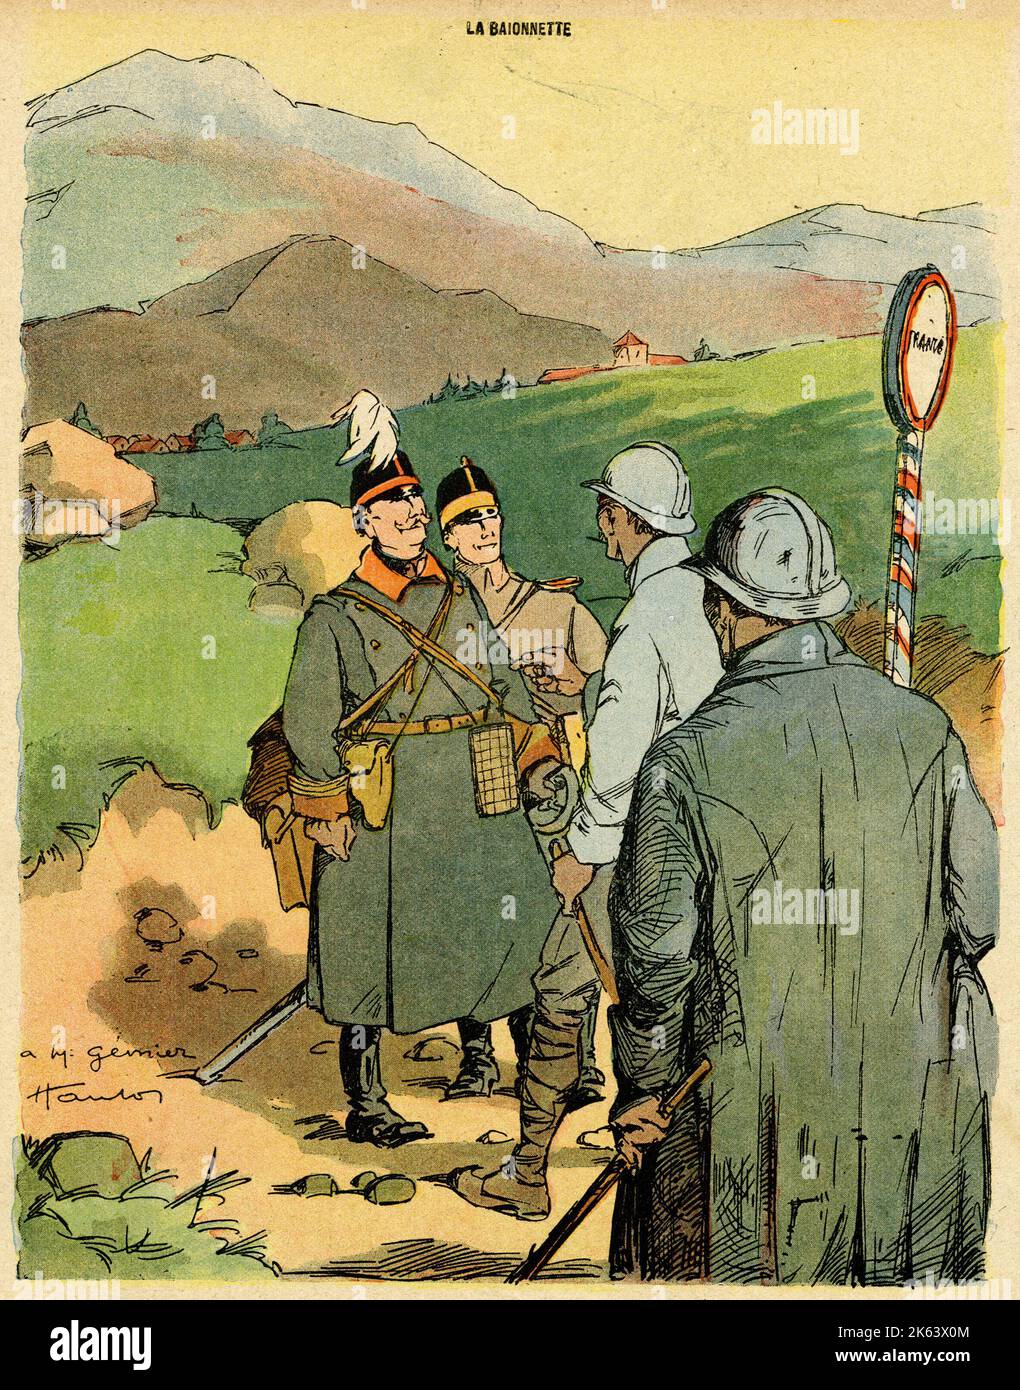 Cartone animato, stagione di caccia. In un posto di frontiera francese, due ufficiali tedeschi chiedono a due soldati francesi se la stagione di caccia è in corso qui. Foto Stock